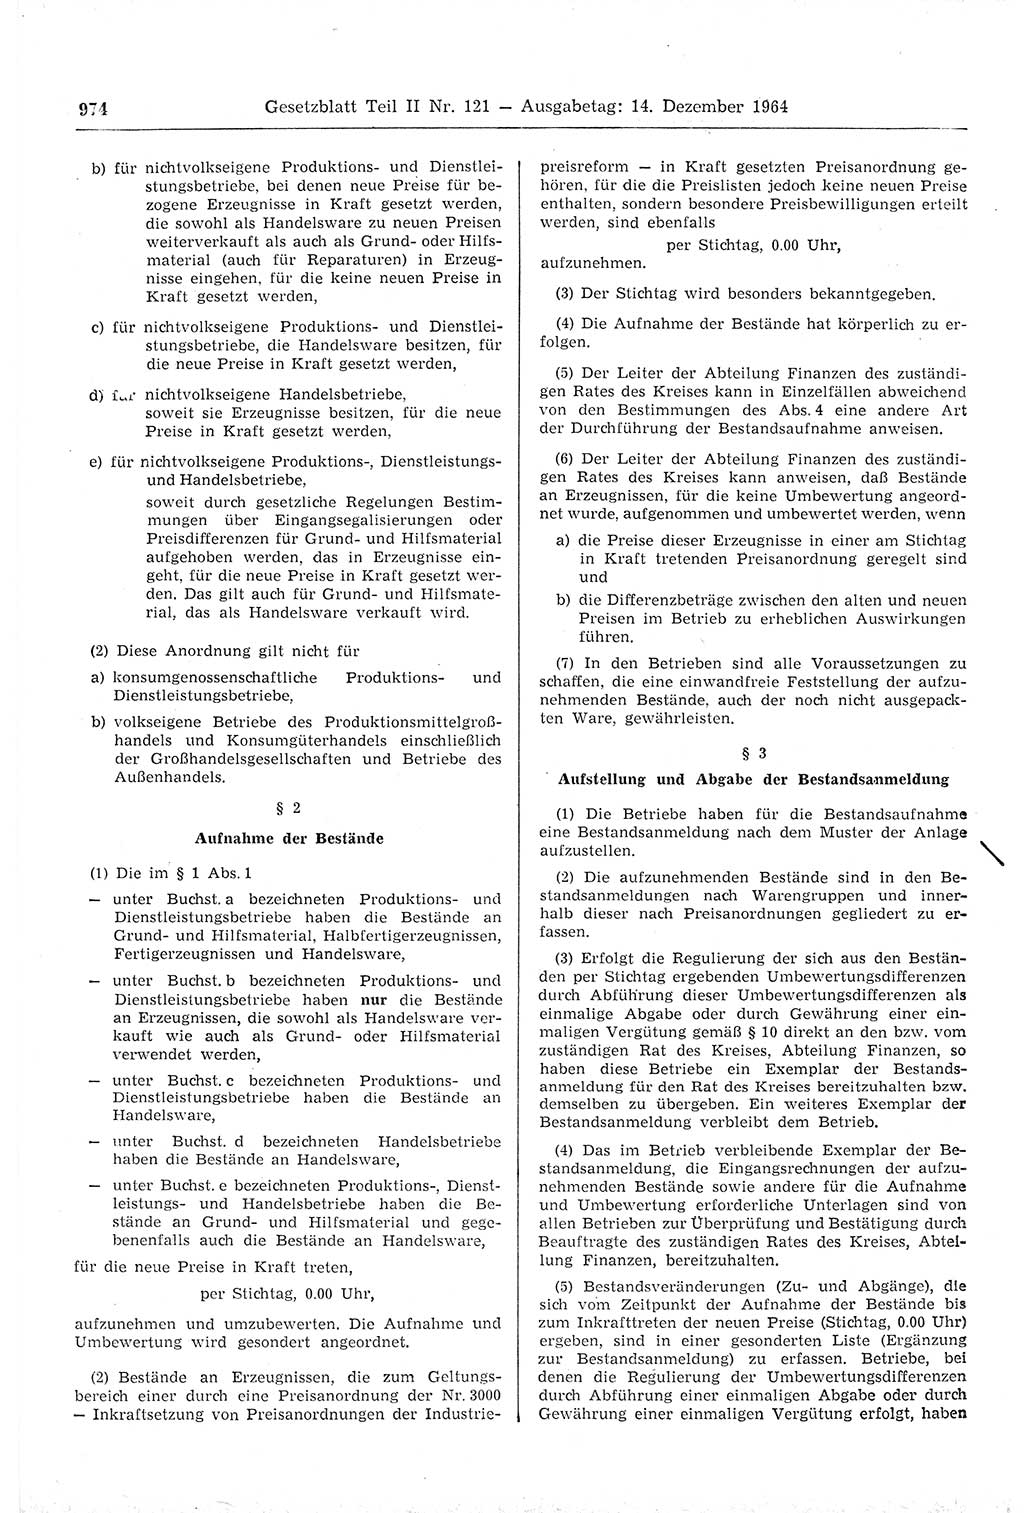 Gesetzblatt (GBl.) der Deutschen Demokratischen Republik (DDR) Teil ⅠⅠ 1964, Seite 974 (GBl. DDR ⅠⅠ 1964, S. 974)